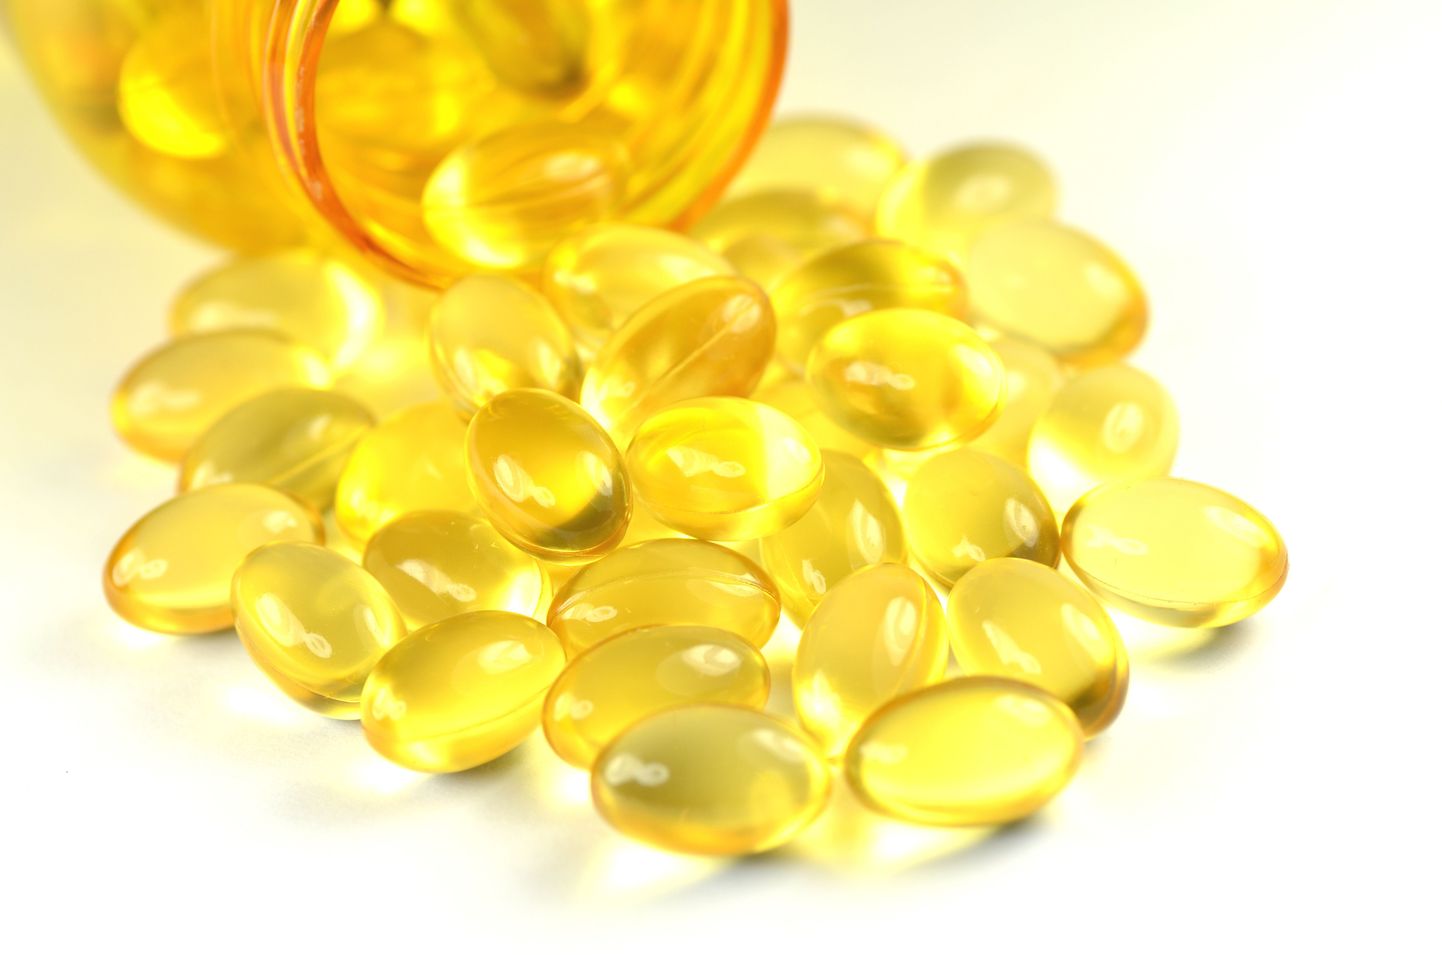 D-vitamiini soovitatakse võtta neil kuudel, kui päikesevalgust napib.